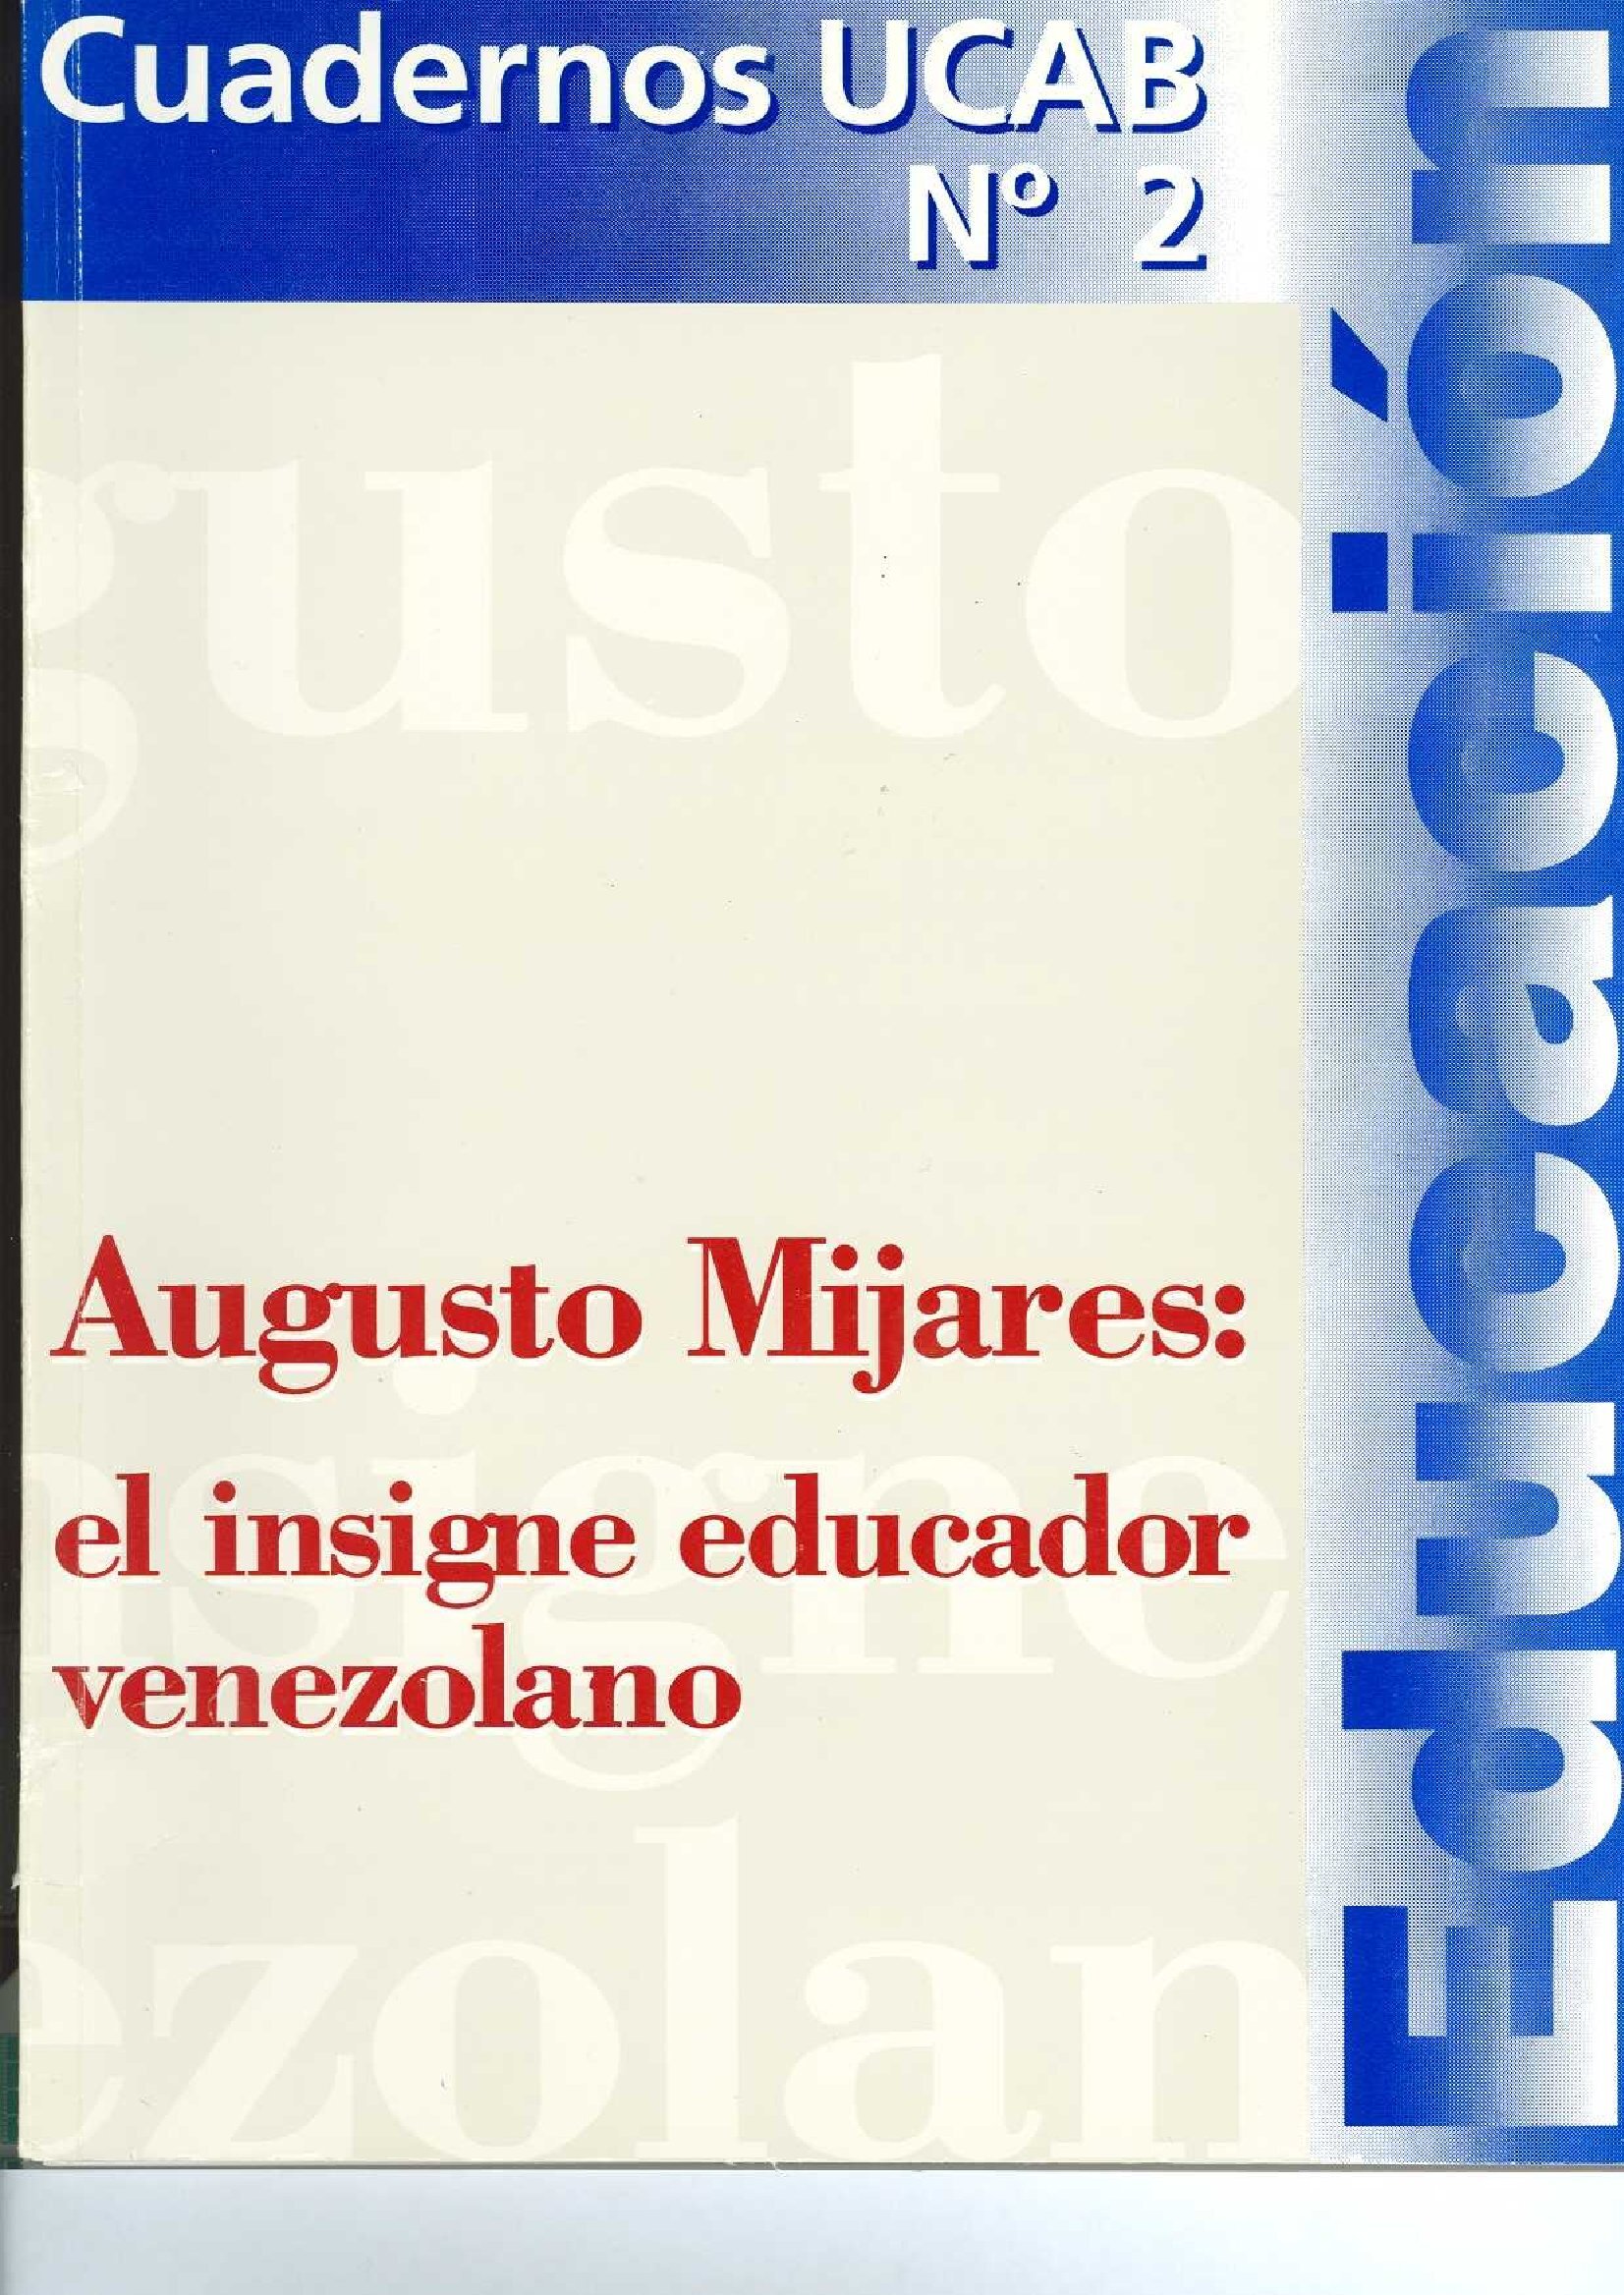                     Ver Núm. 2 (1999): AUGUSTO MIJARES:  EL INSIGNE EDUCADOR VENEZOLANO 
                